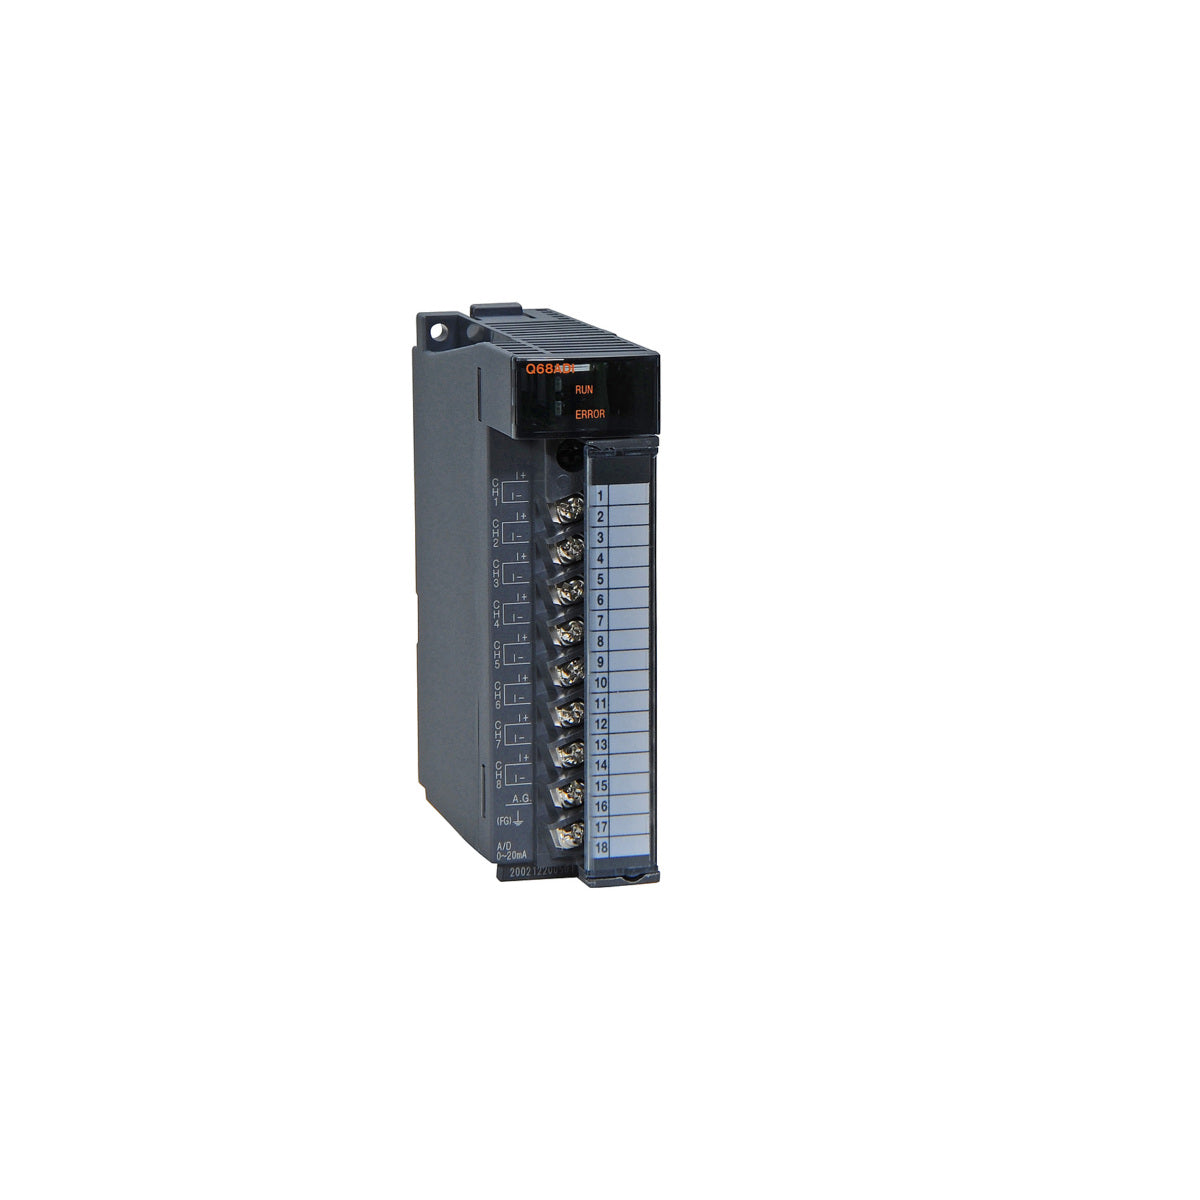 Q68ADI | Mitsubishi 8 channel analog input module current